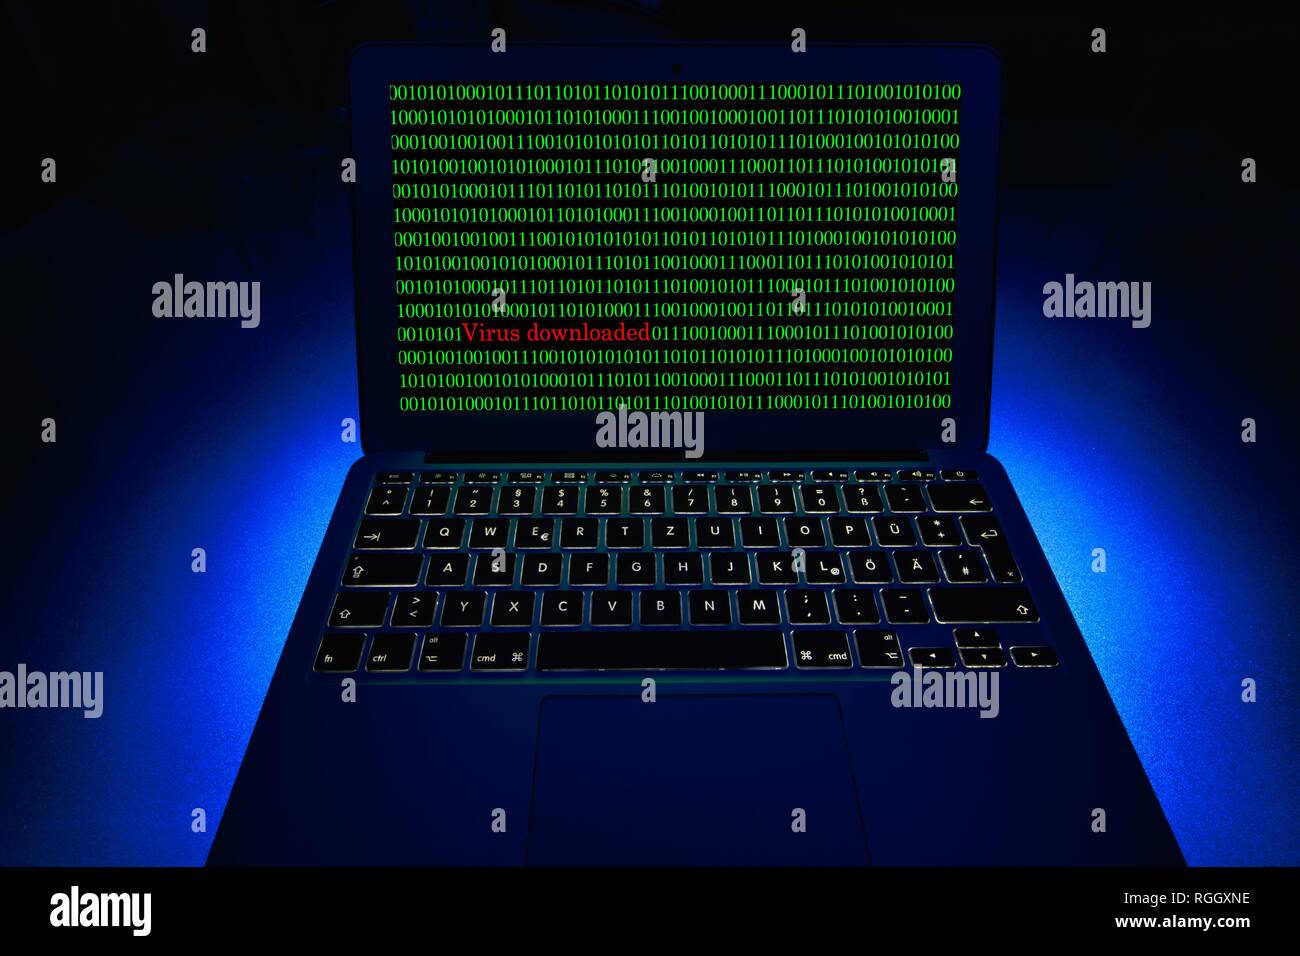 Computer portatile con i numeri binari sullo schermo. Immagine simbolo di malware e virus alarm, la criminalità informatica, la protezione dei dati, Baden-Württemberg Foto Stock